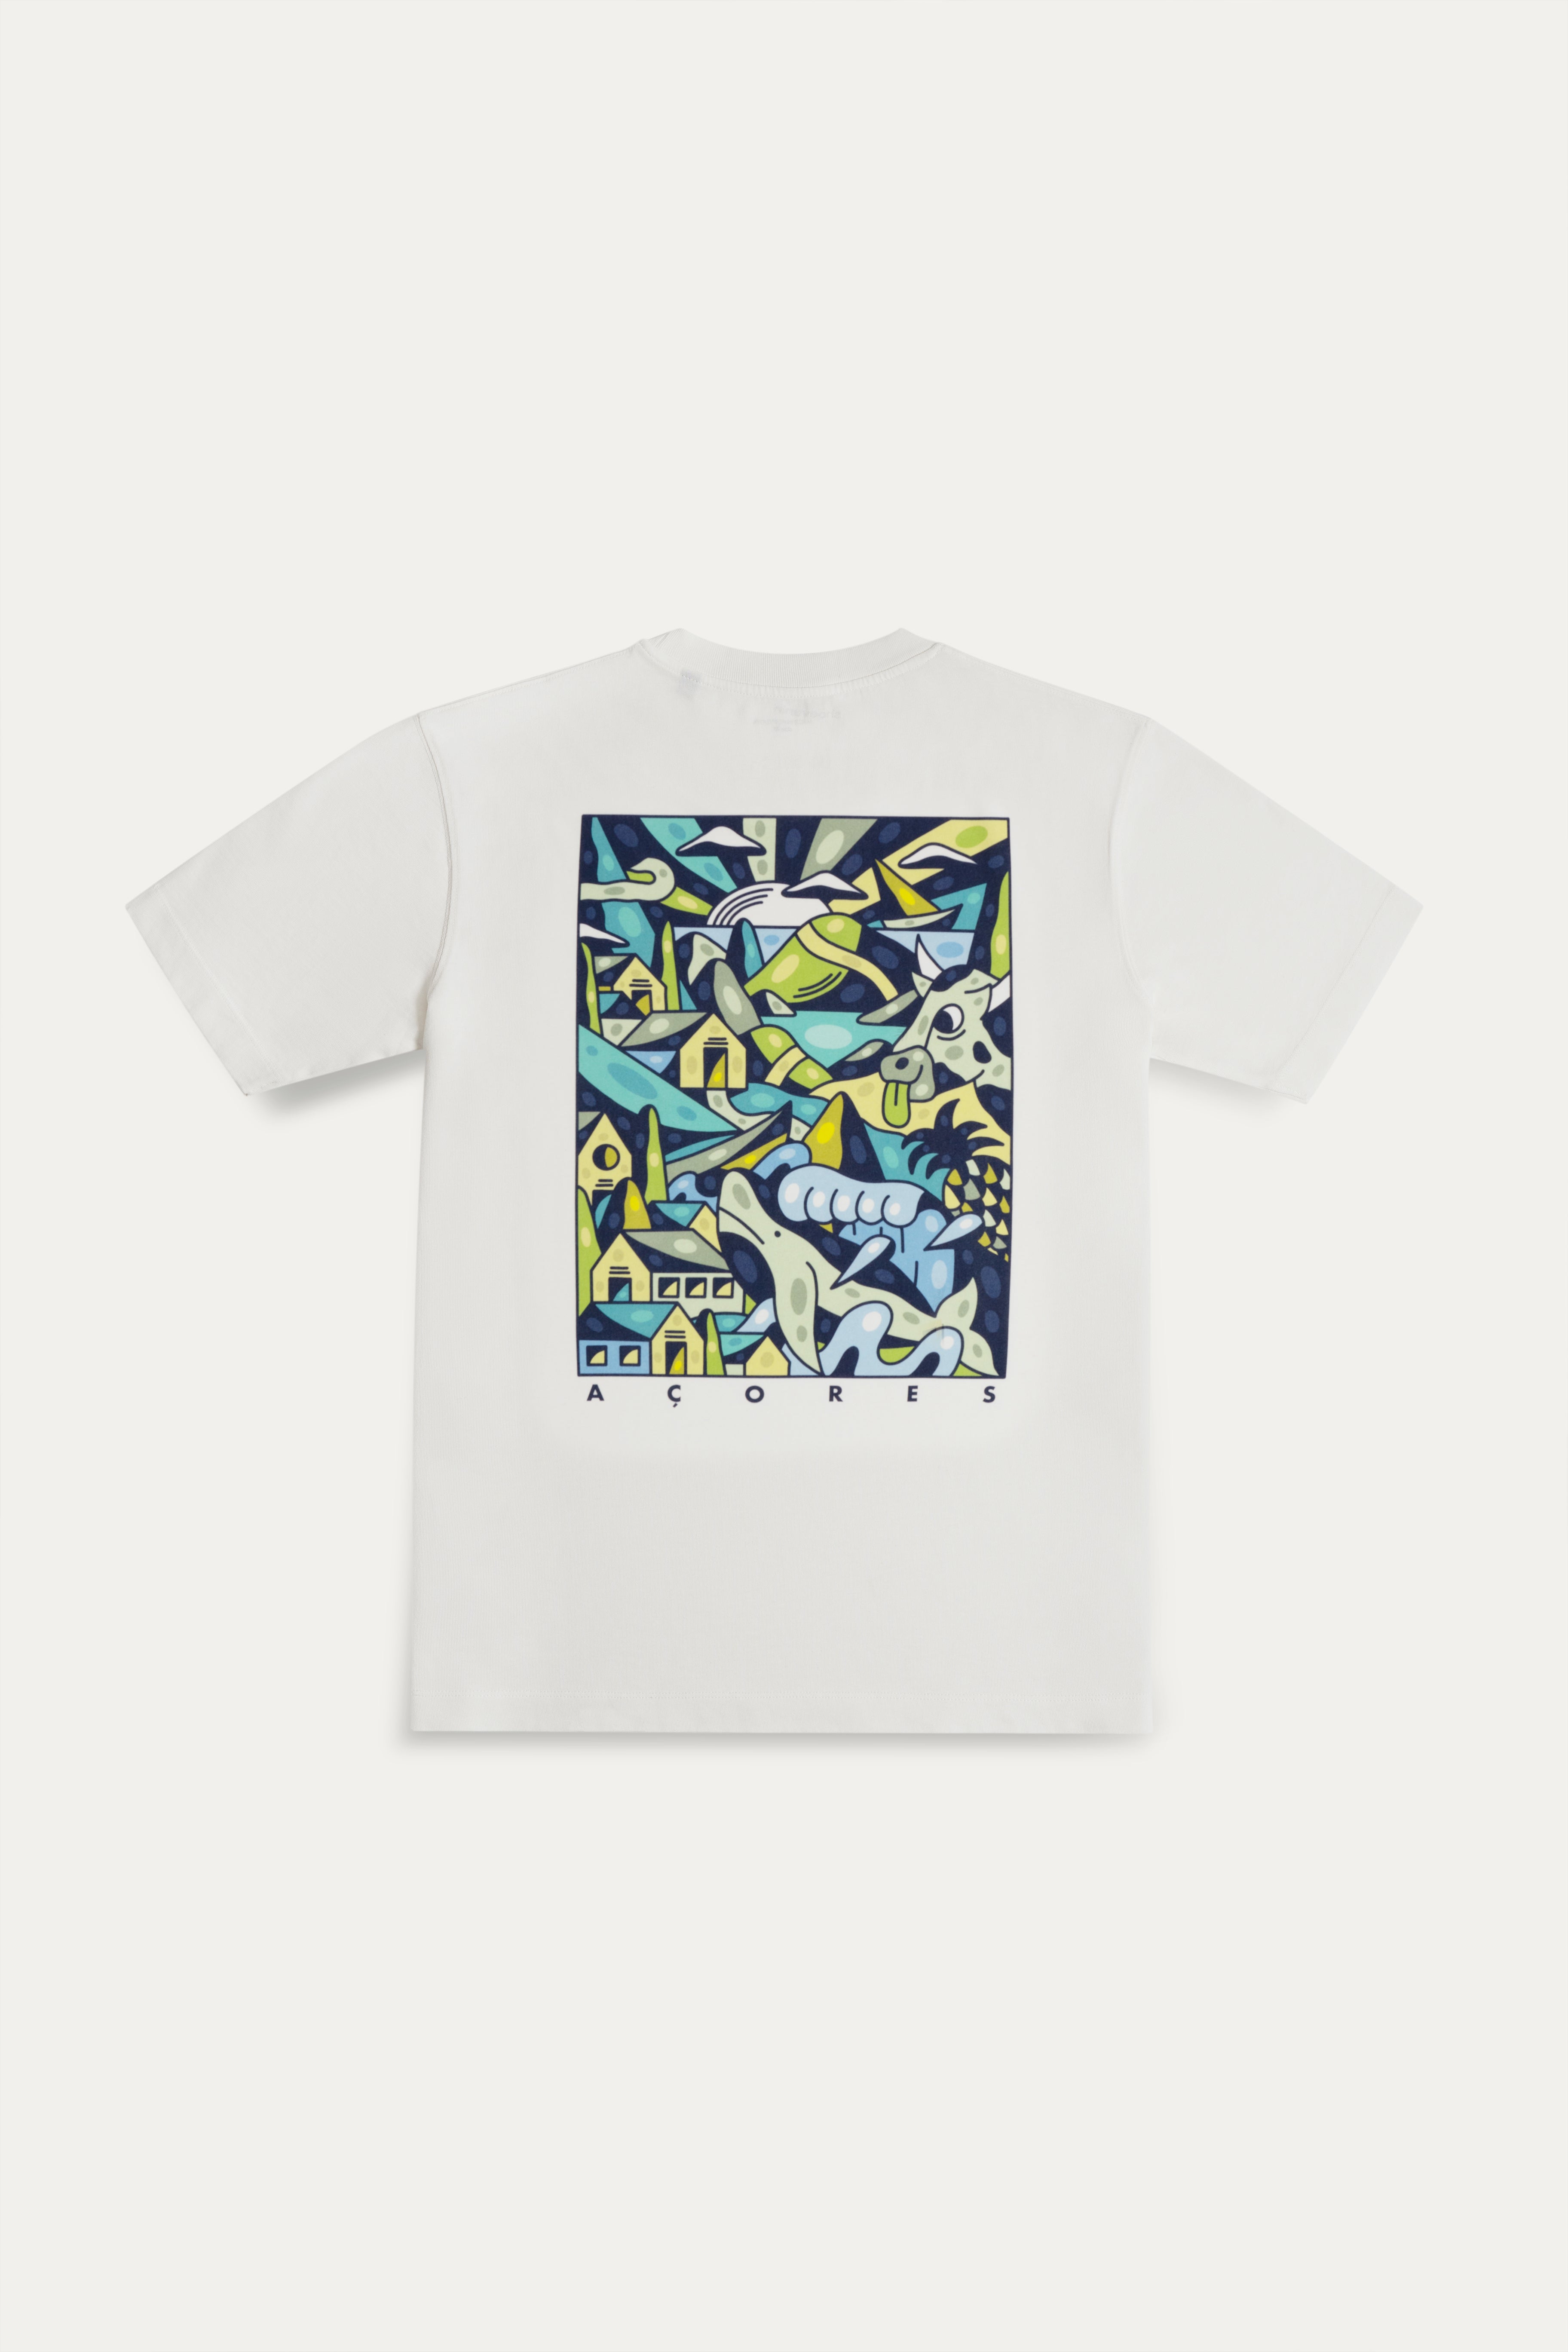 Açores T-shirt